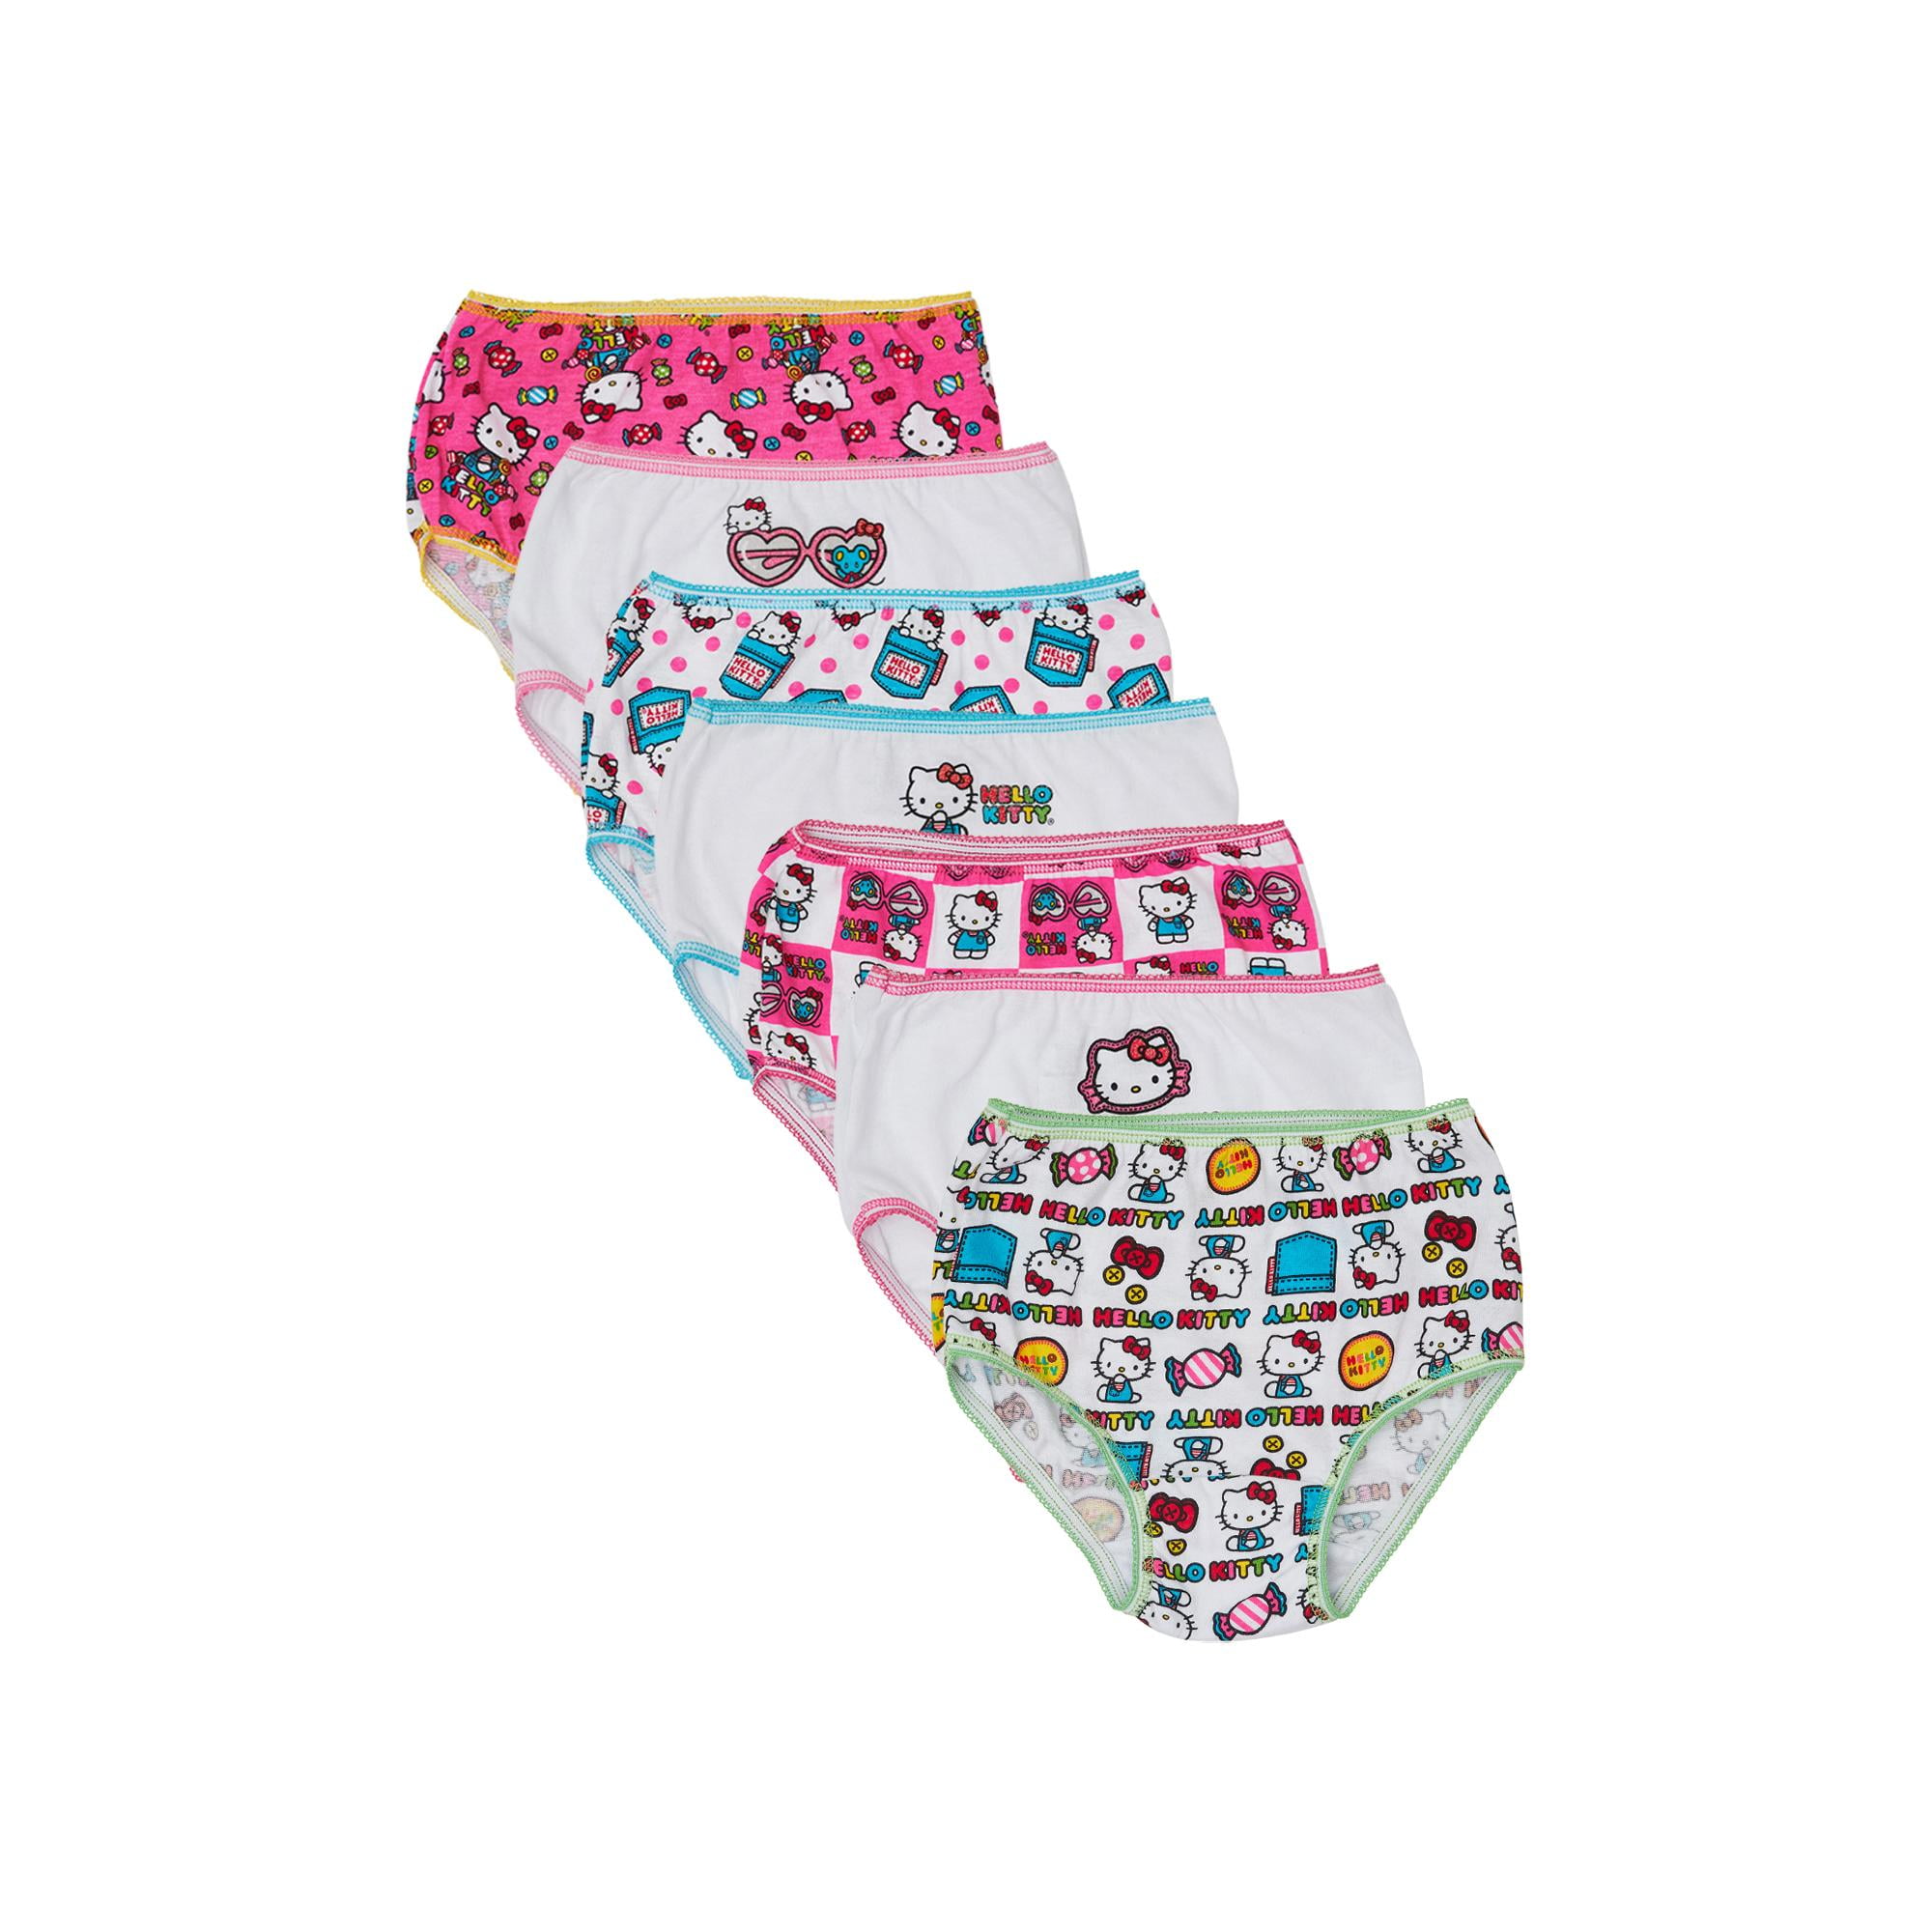  Hello  Kitty  Hello  Kitty  Toddler Girls Underwear Panties  